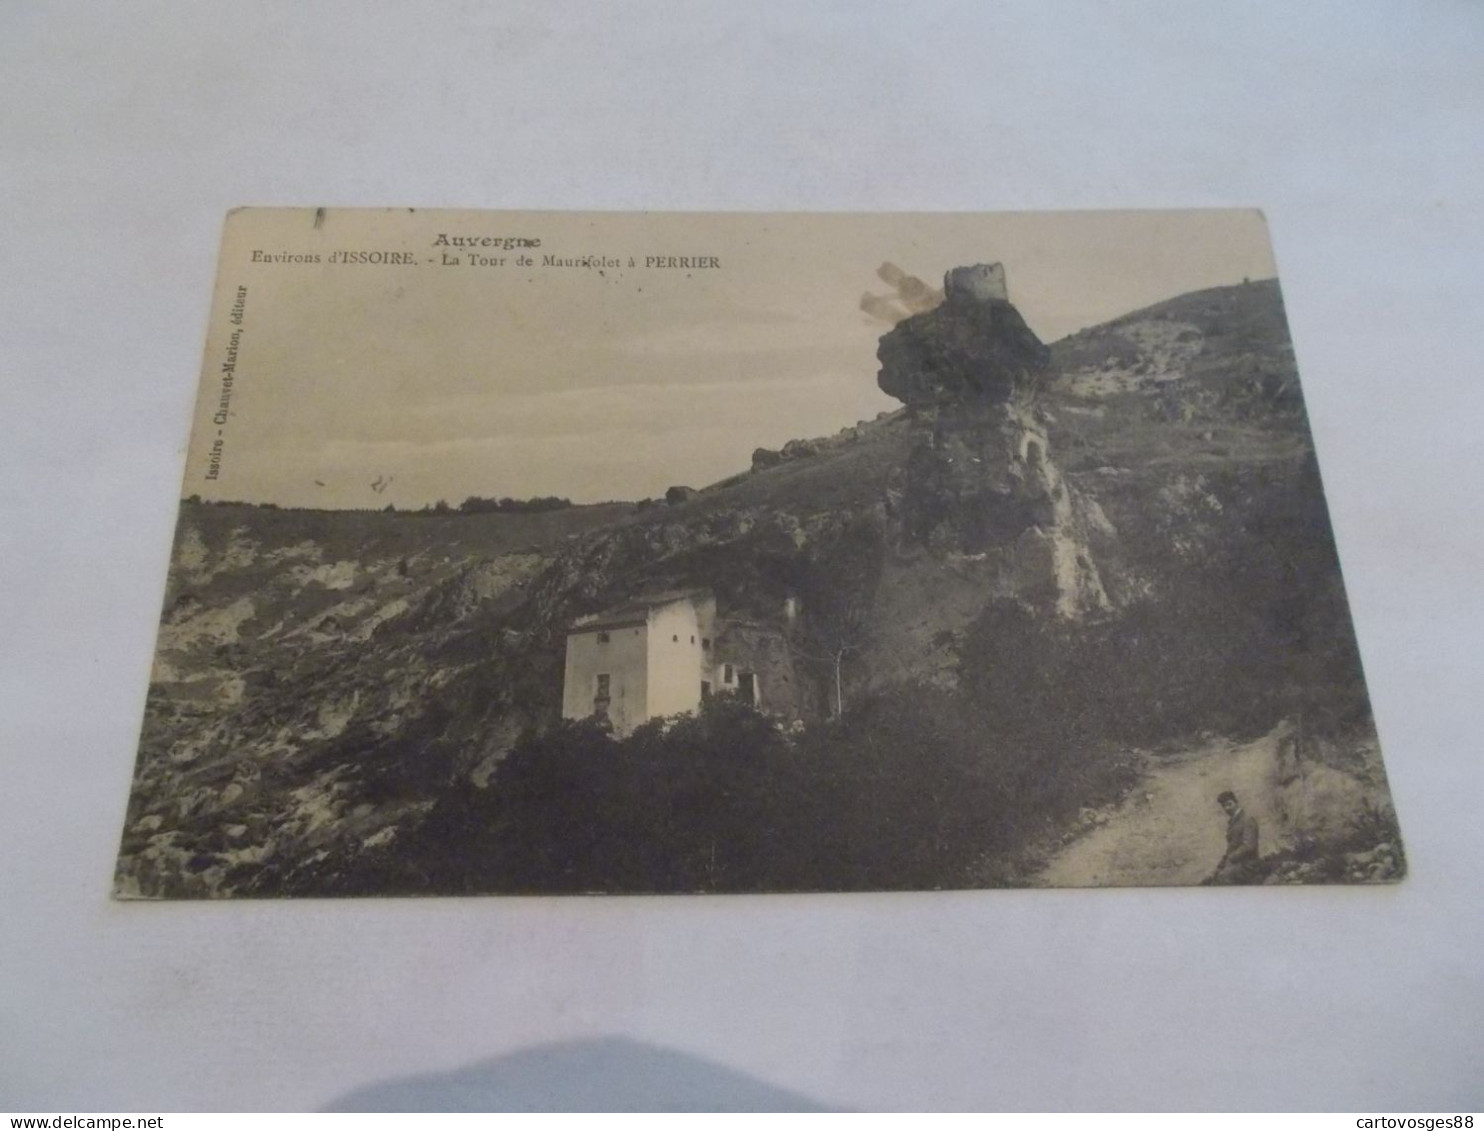 ENVIRONS D ISSOIRE ( 63 Puy De Dome ) LA TOUR DE MAURIFOLET A PERRIER  VUE GENERALE 1912 - Issoire